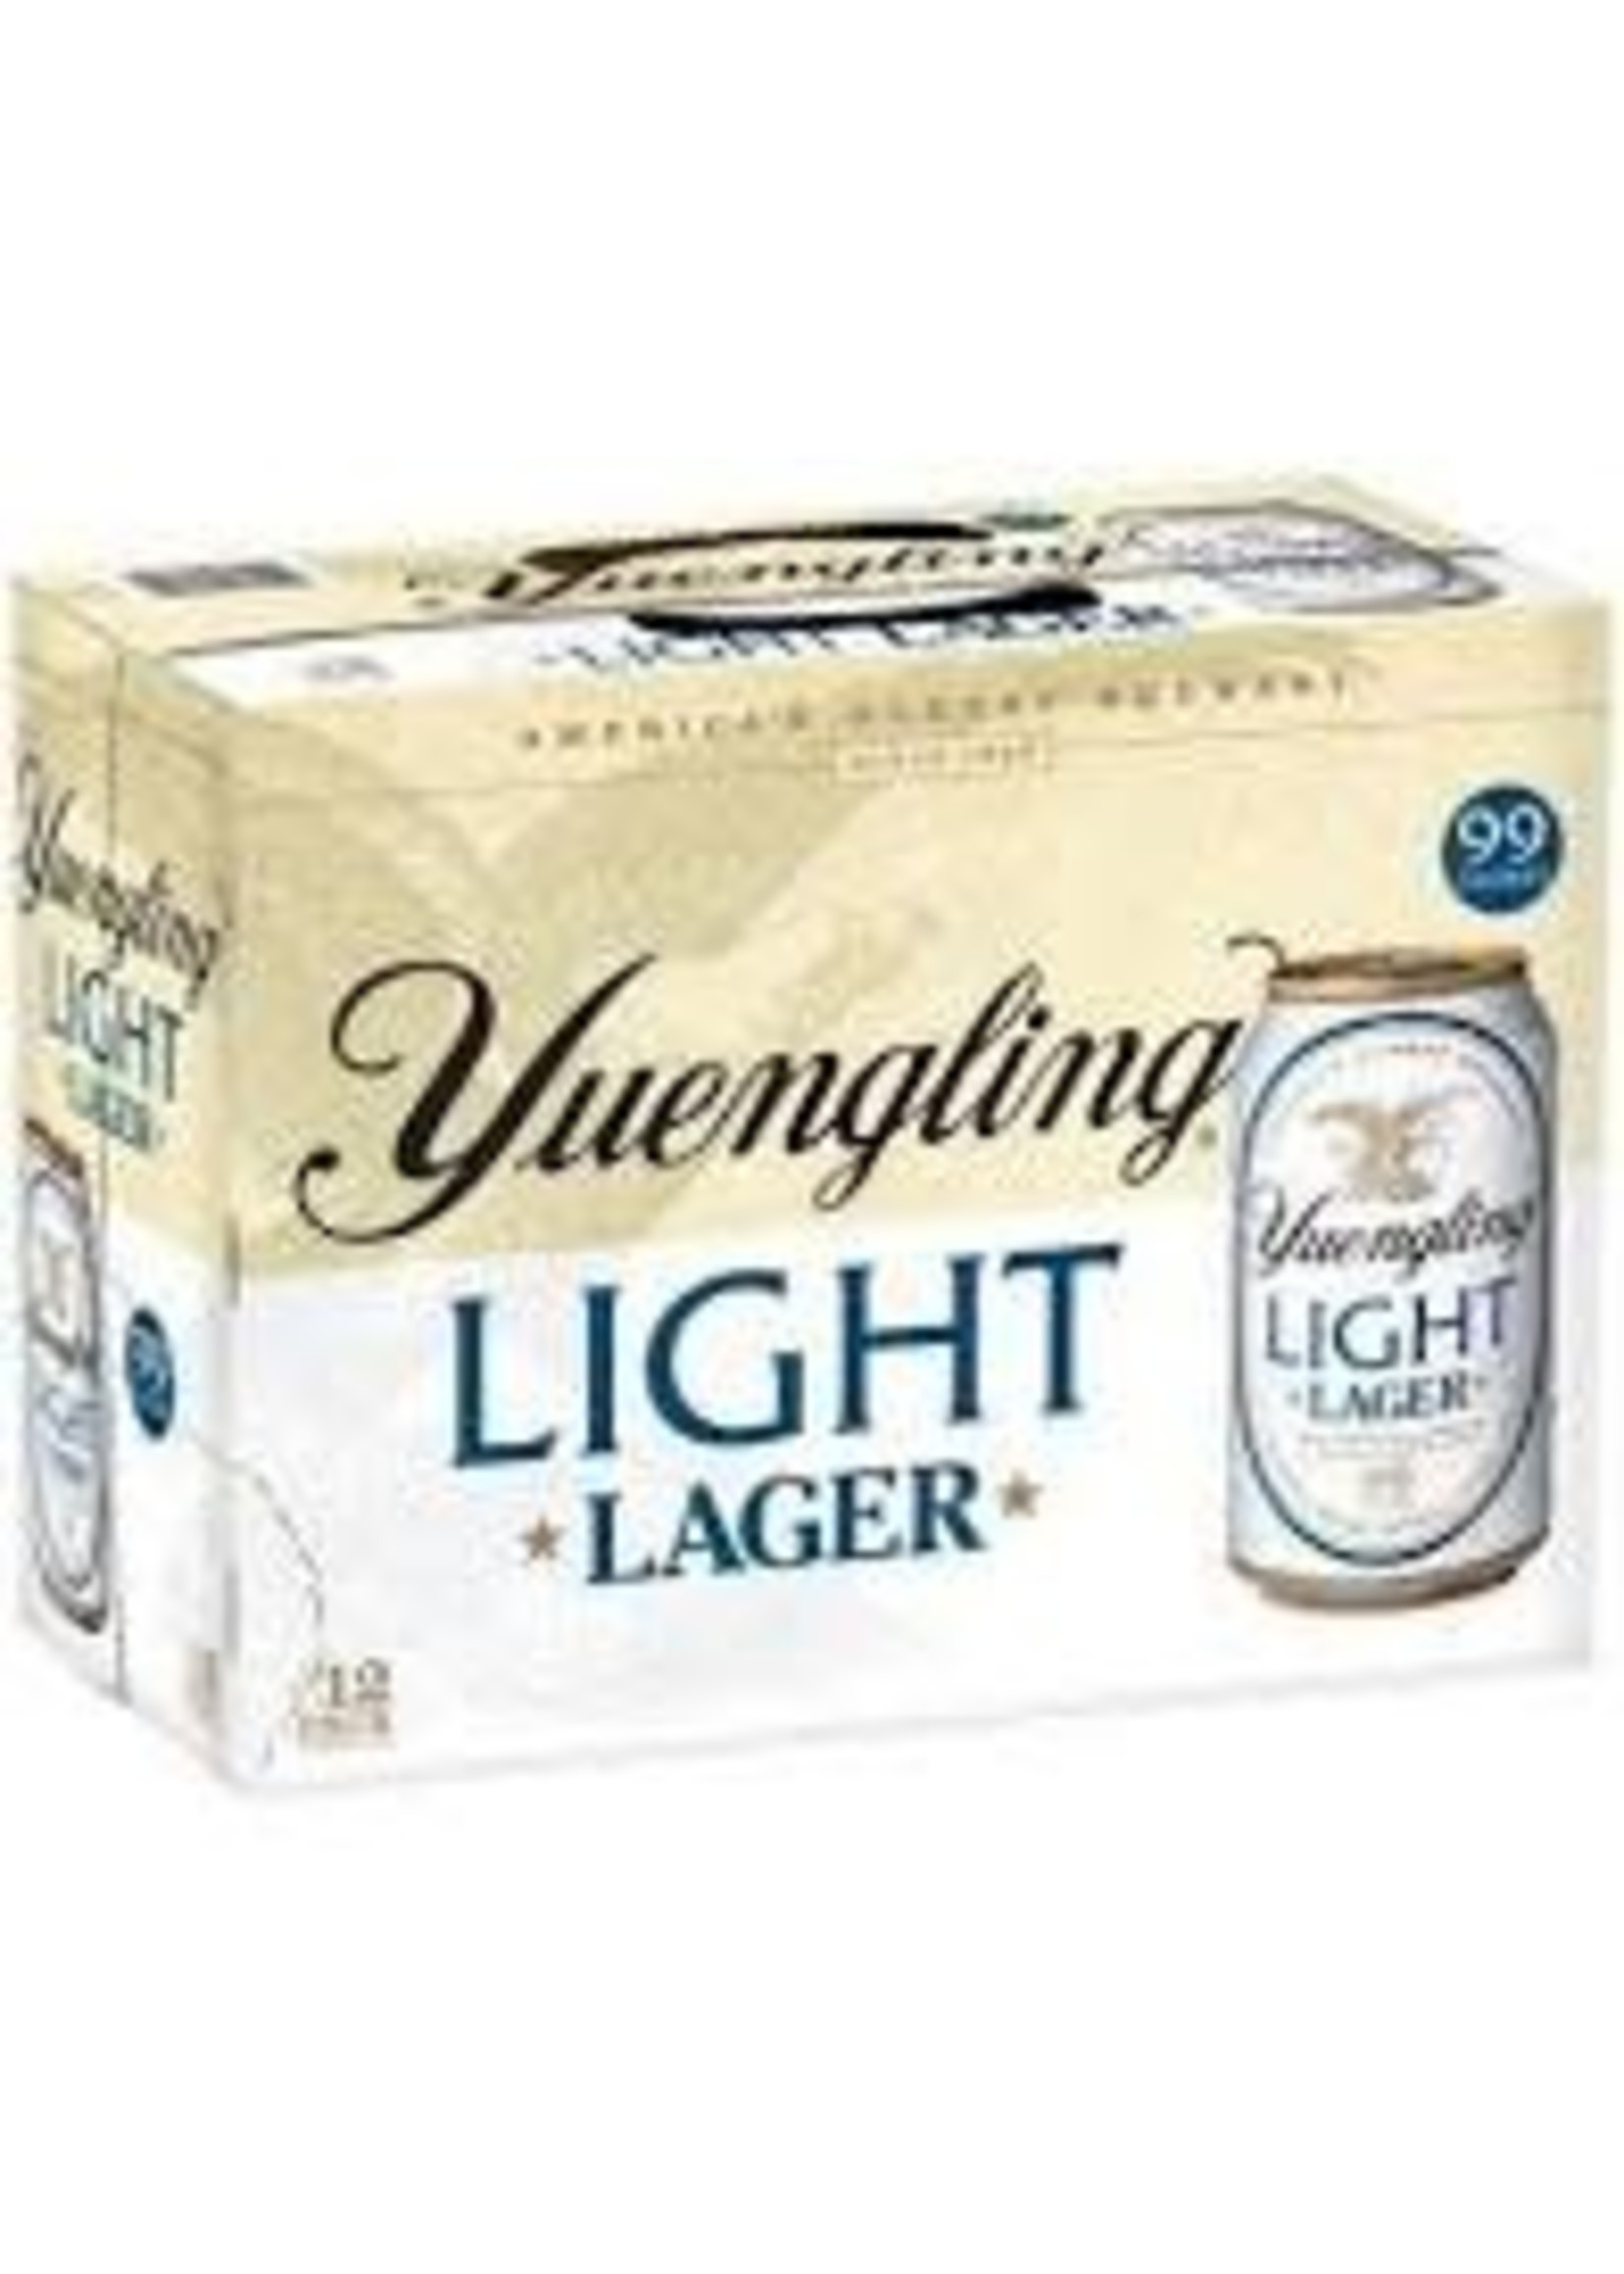 YUENGLING YUENGLING	LIGHT 12-12OZ CANS	(12PK)